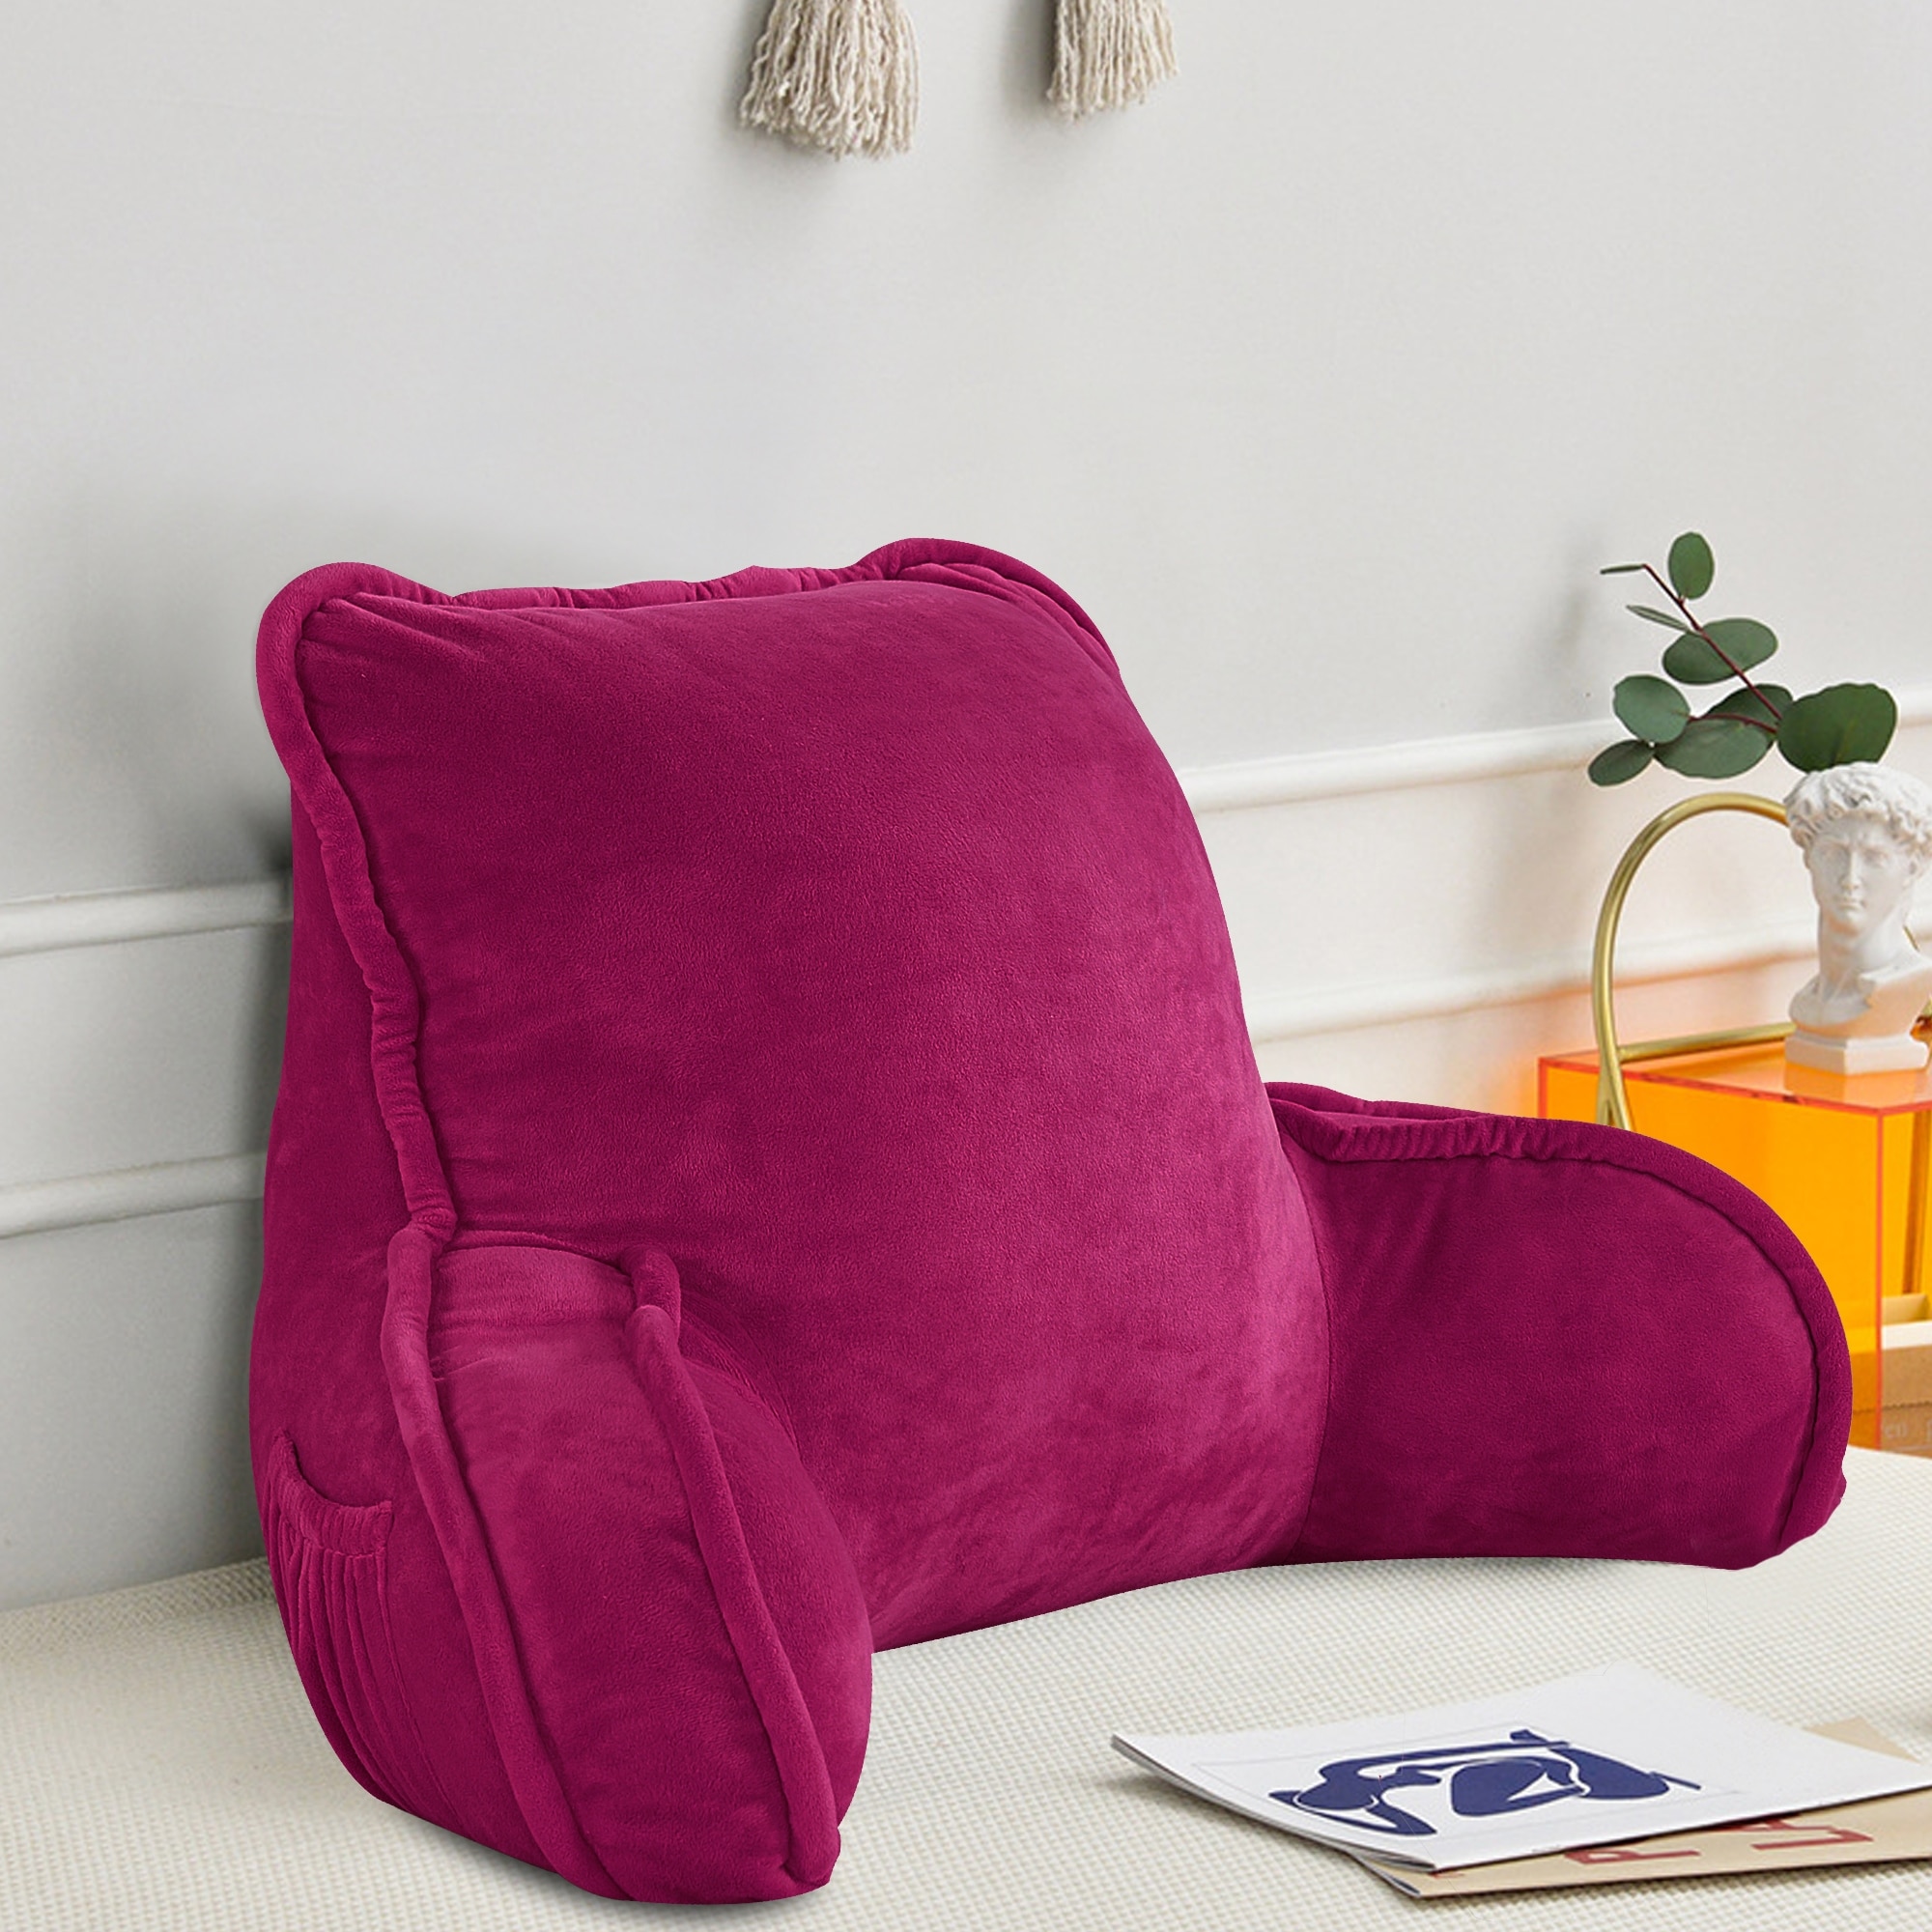  Nestl Reading Pillow Standard Bed Pillow, Back Pillow for  Sitting in Bed Shredded Memory Foam Chair Pillow, Reading & Bed Rest  Pillows Purple Back Pillow for Bed, Bed Chair Arm Pillow